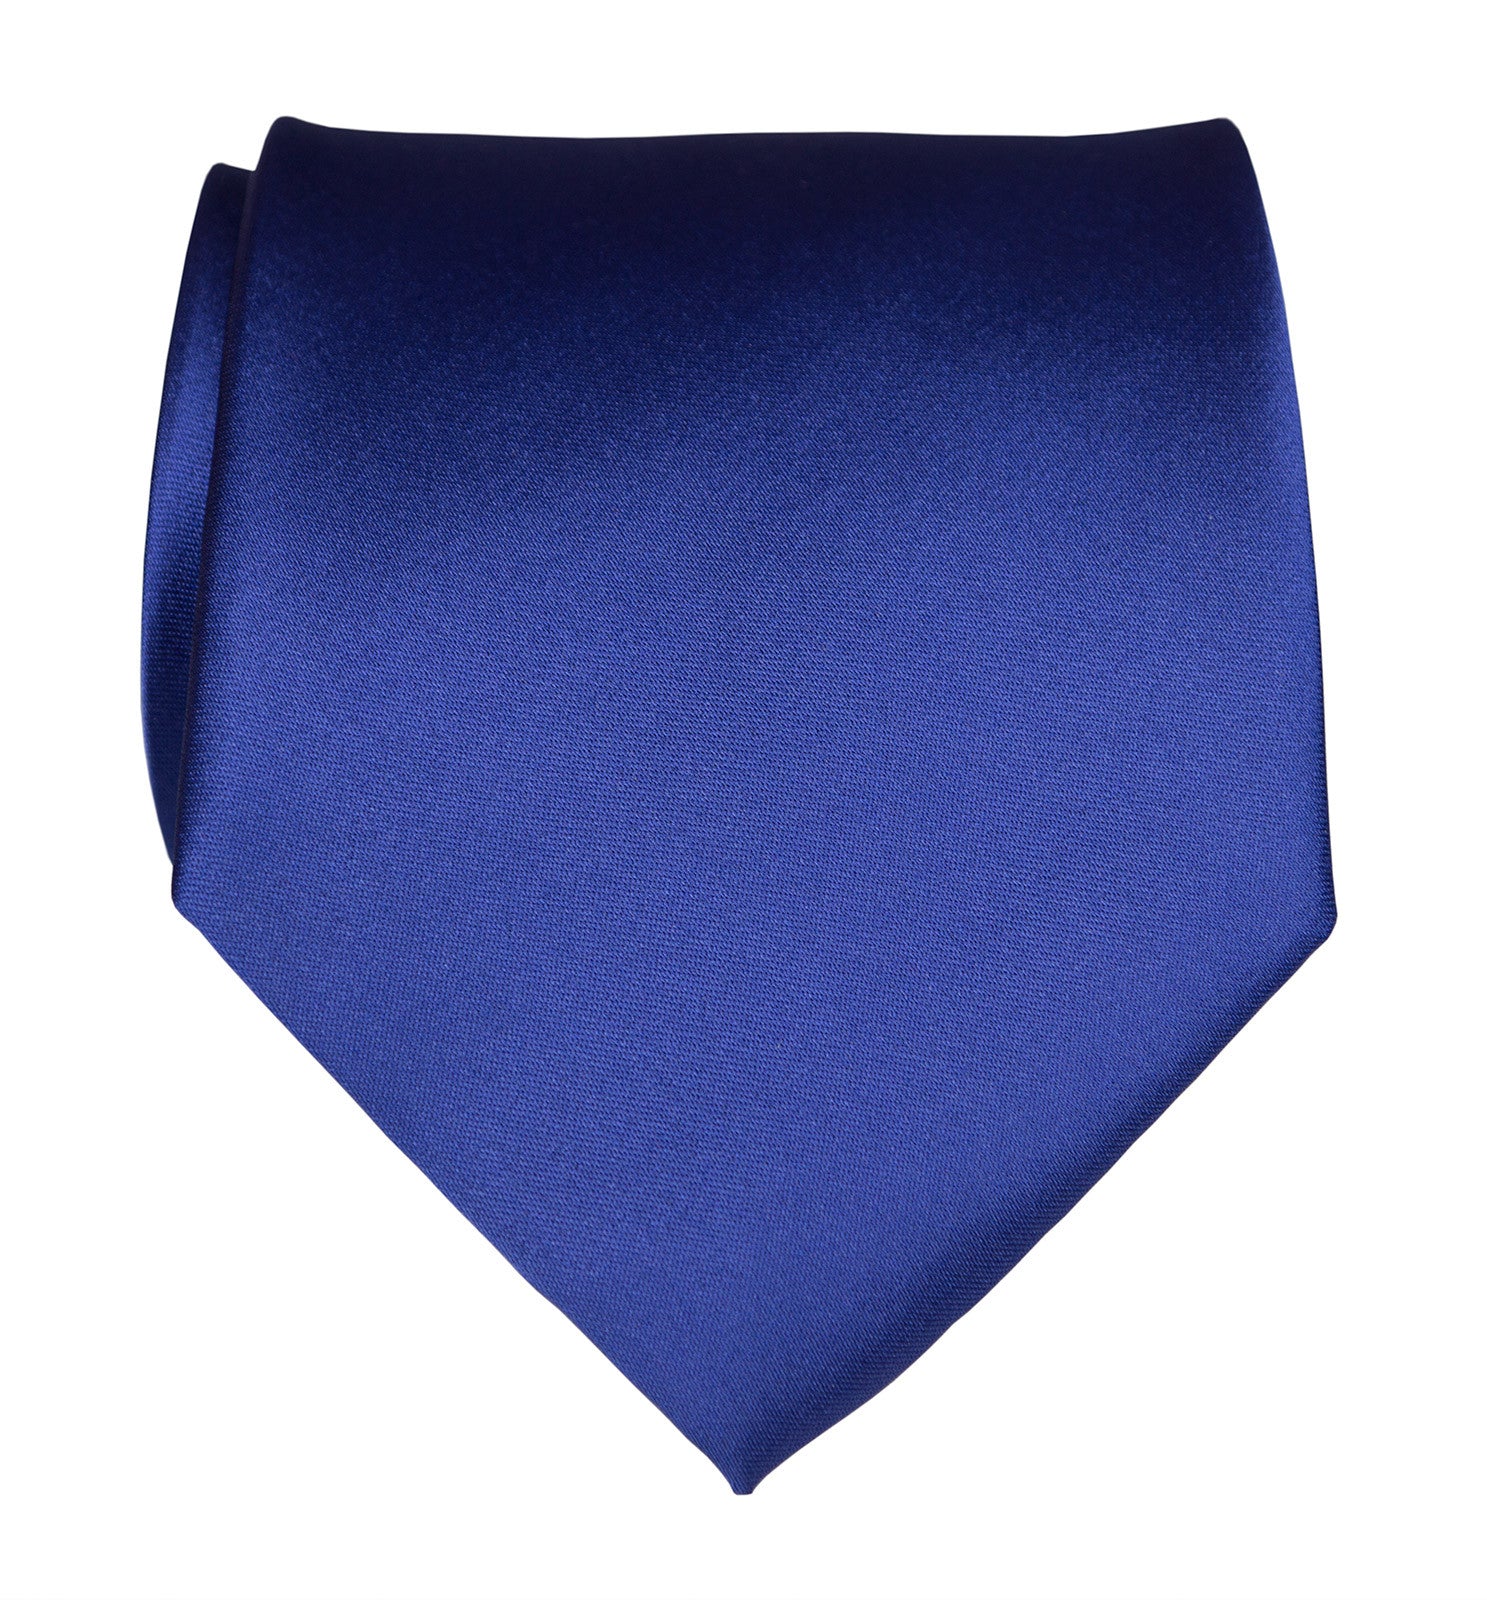 Solid Dark Royal Blue Neck Tie, Bows-N-Ties.com